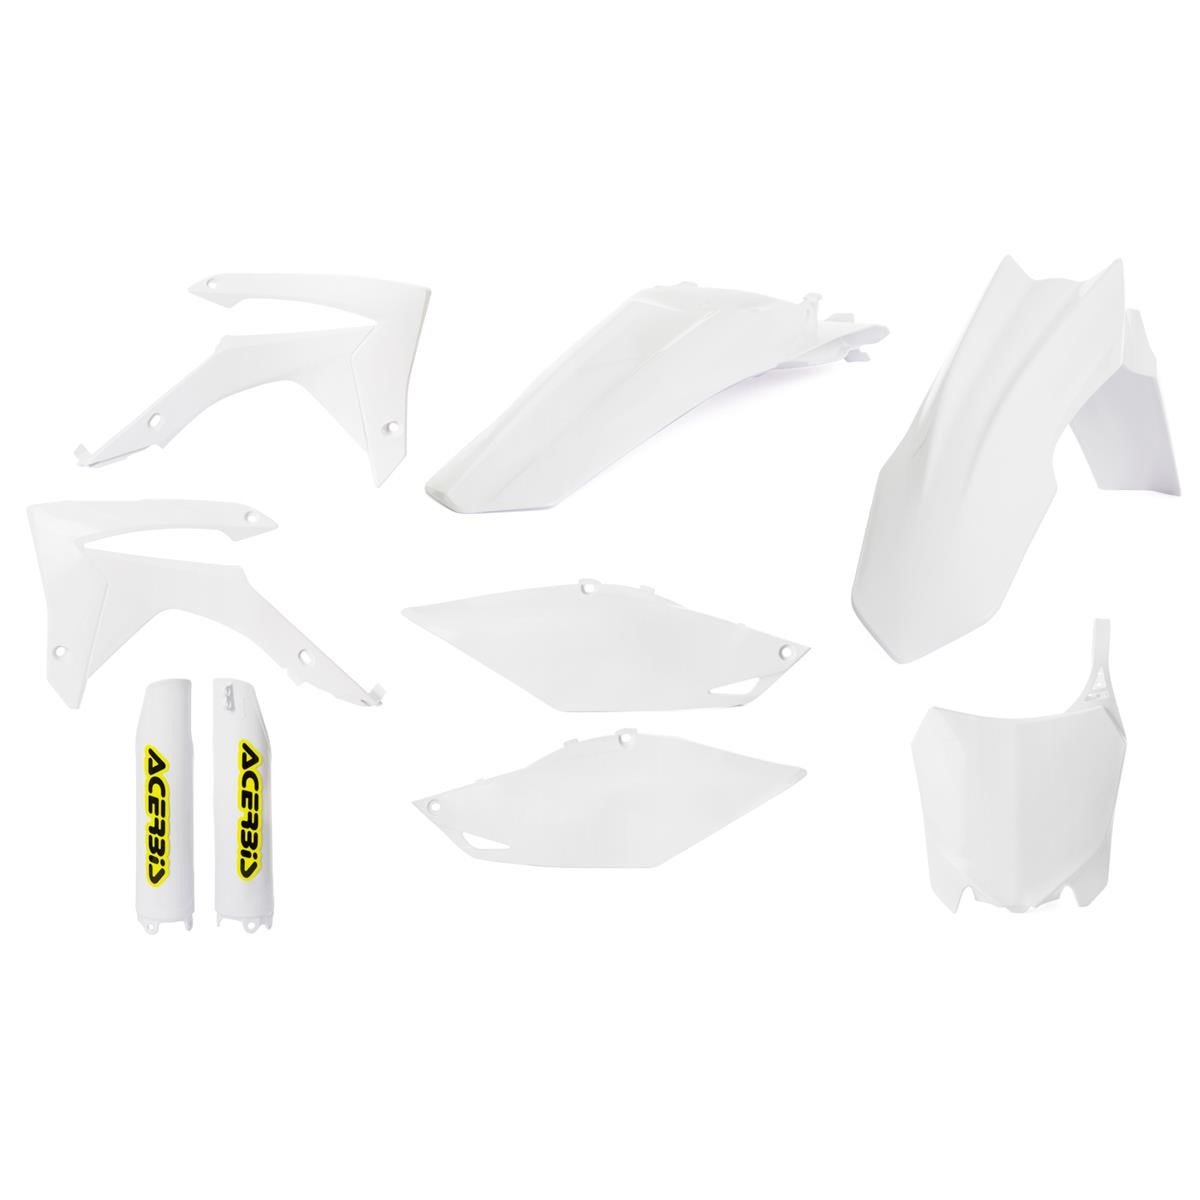 Acerbis Plastic Kit Full-Kit Honda CRF 250 14-17, CRF 450 13-16, White